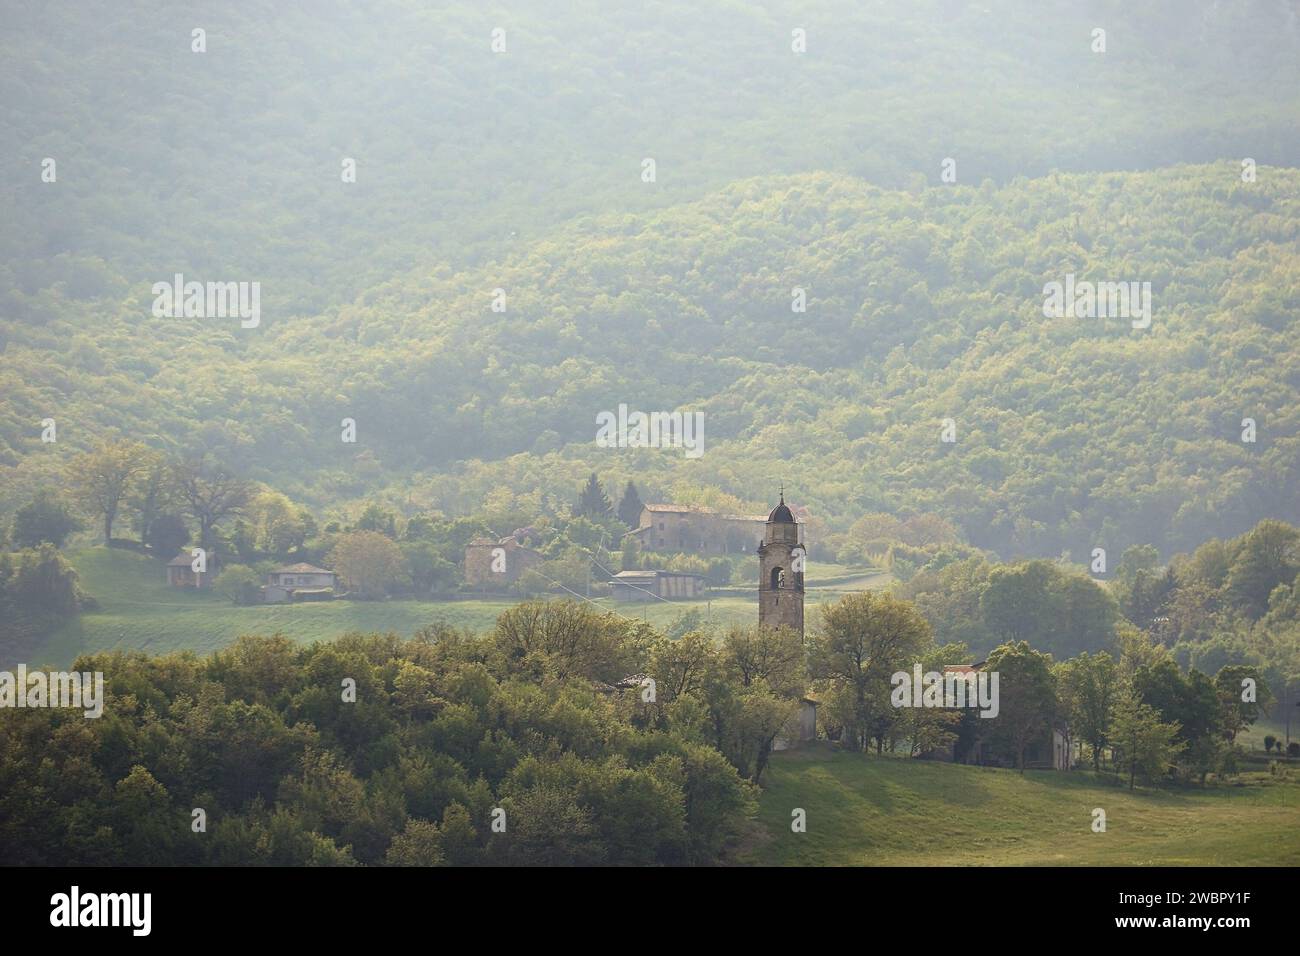 Una scena naturalistica italiana con un villaggio e il campanile della chiesa immerso nel verde lussureggiante. Foto Stock